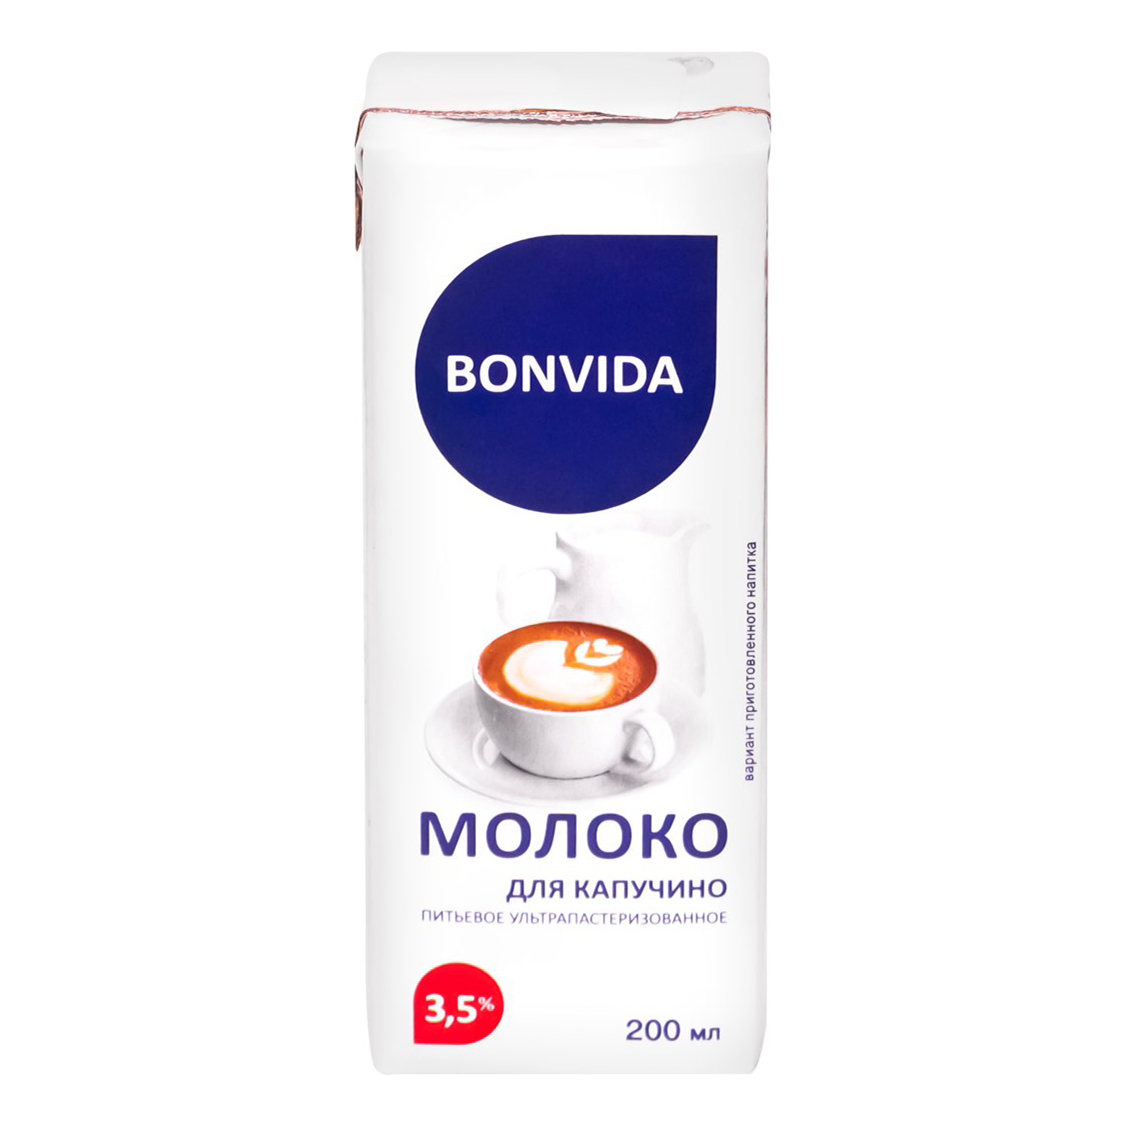 Молоко 3,5% пастеризованное 200 мл Bonvida для капучино БЗМЖ